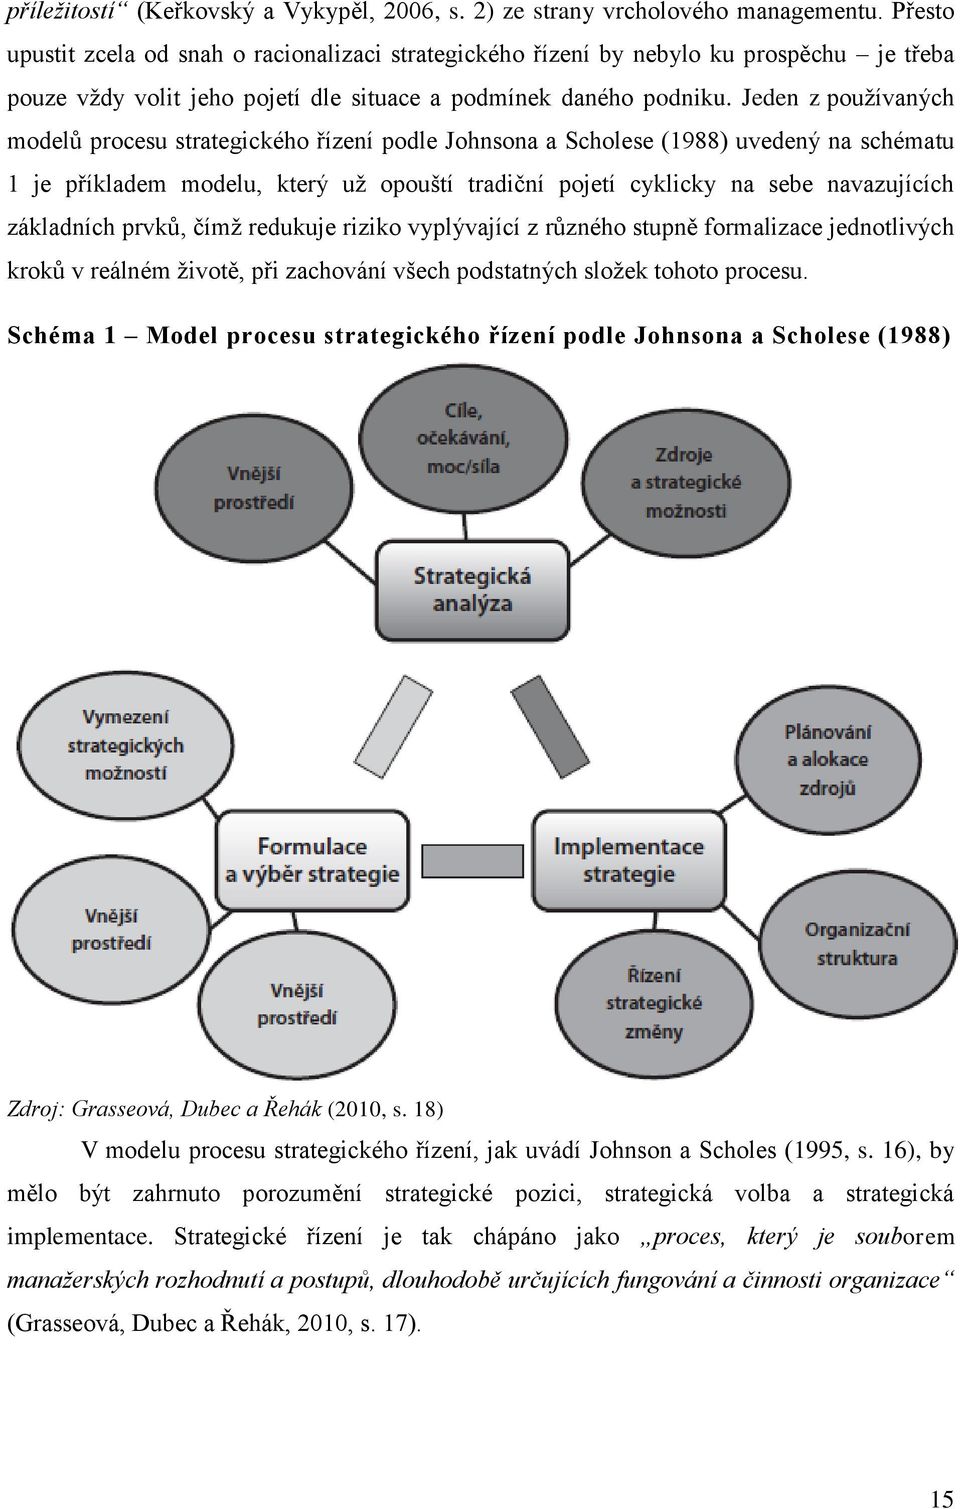 Jeden z pouţívaných modelů procesu strategického řízení podle Johnsona a Scholese (1988) uvedený na schématu 1 je příkladem modelu, který uţ opouští tradiční pojetí cyklicky na sebe navazujících